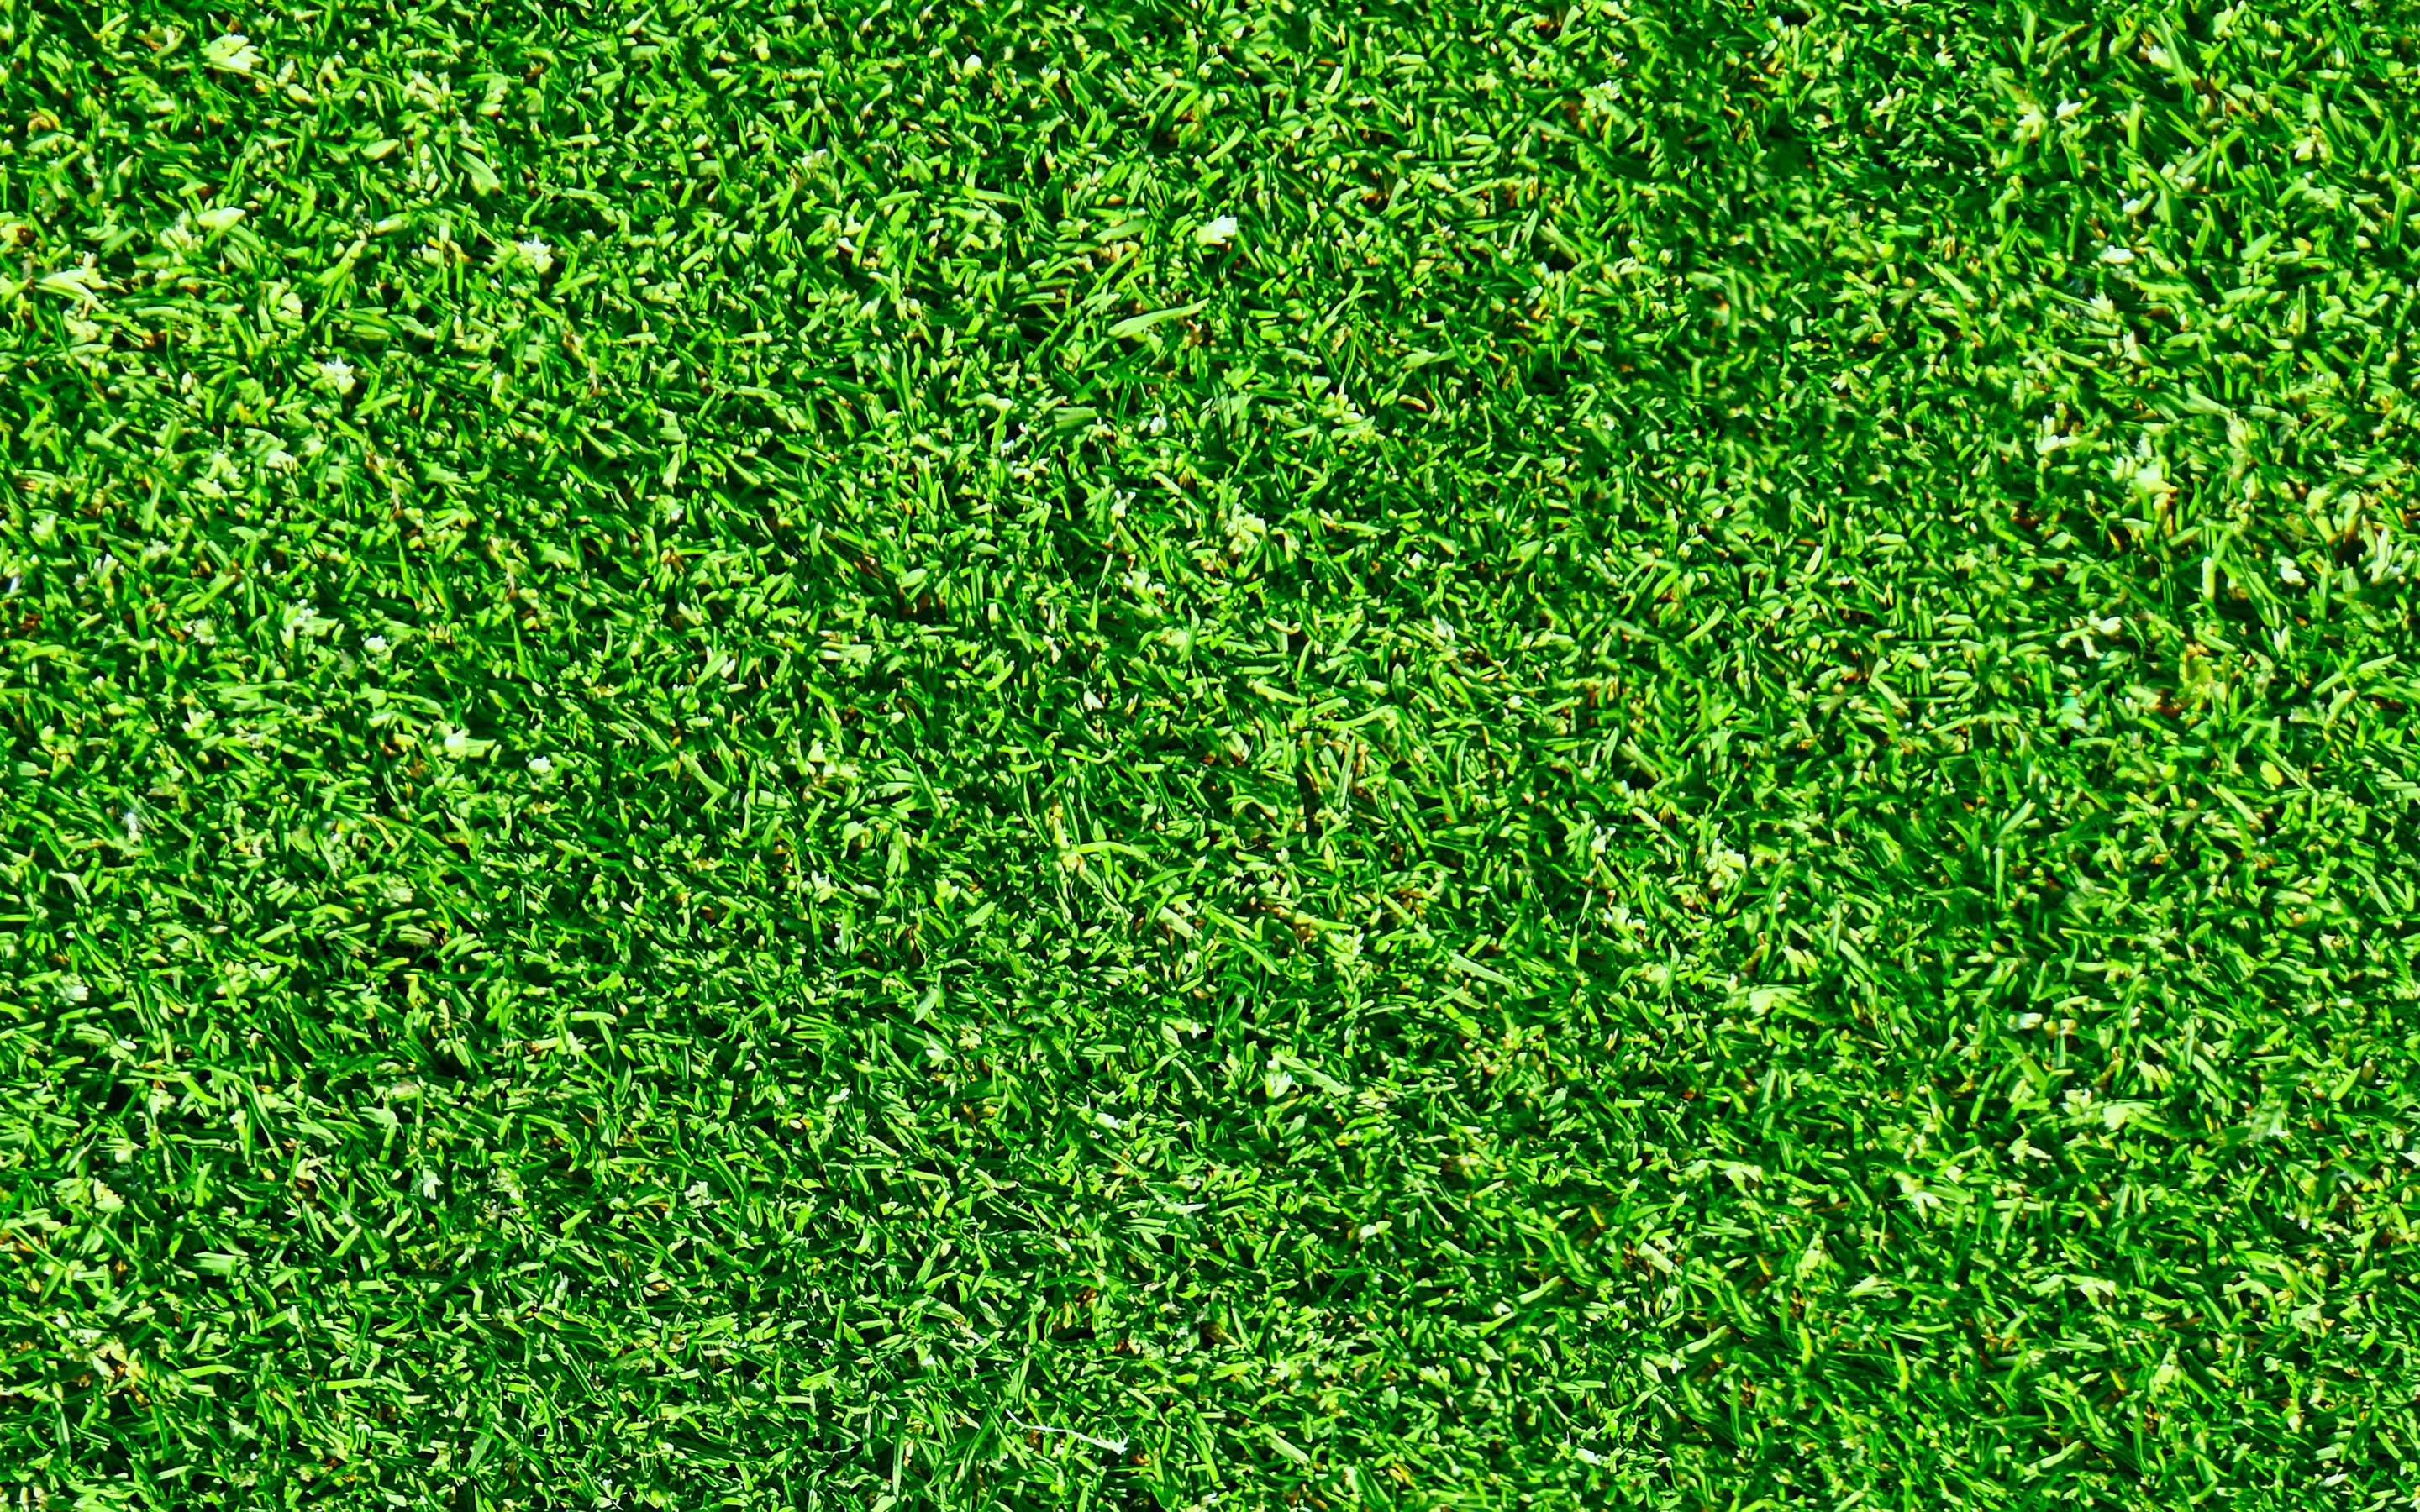 Download wallpapers green grass texture green grass beautiful